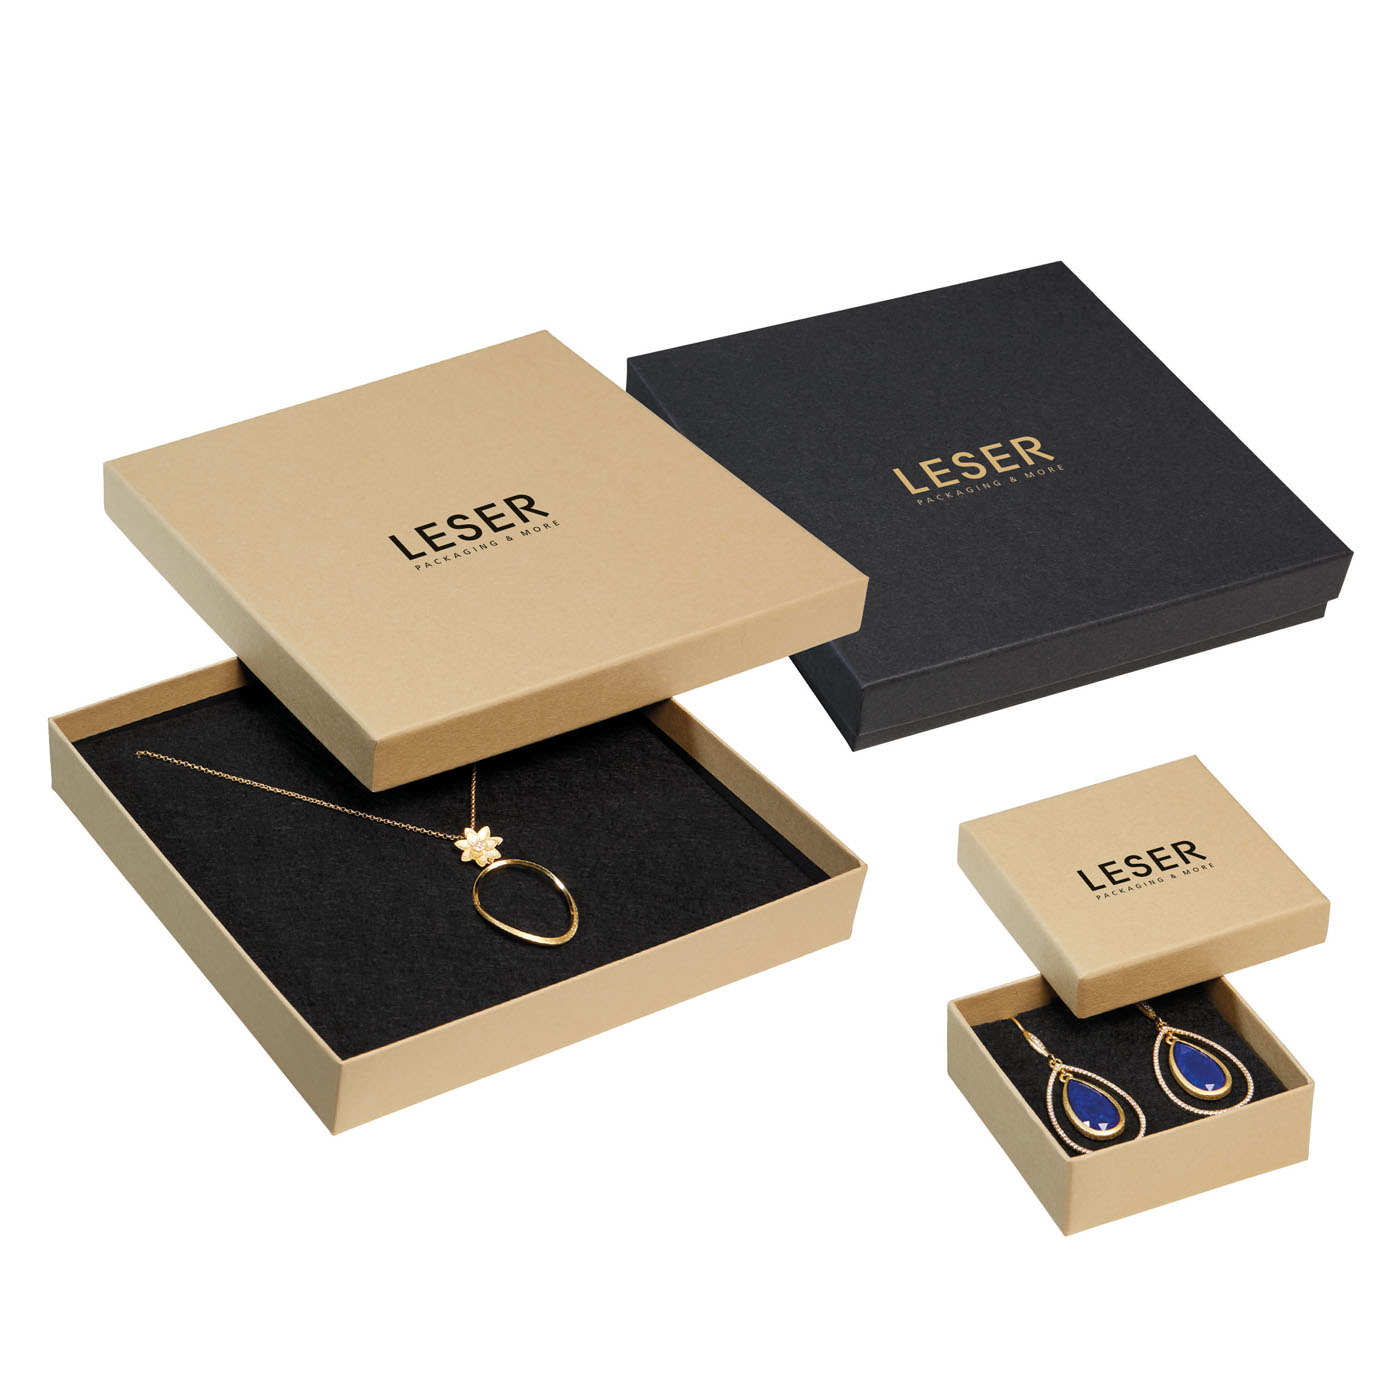 Serie de productos 0150 RECYCLE como embalaje sostenible para joyas de LESER